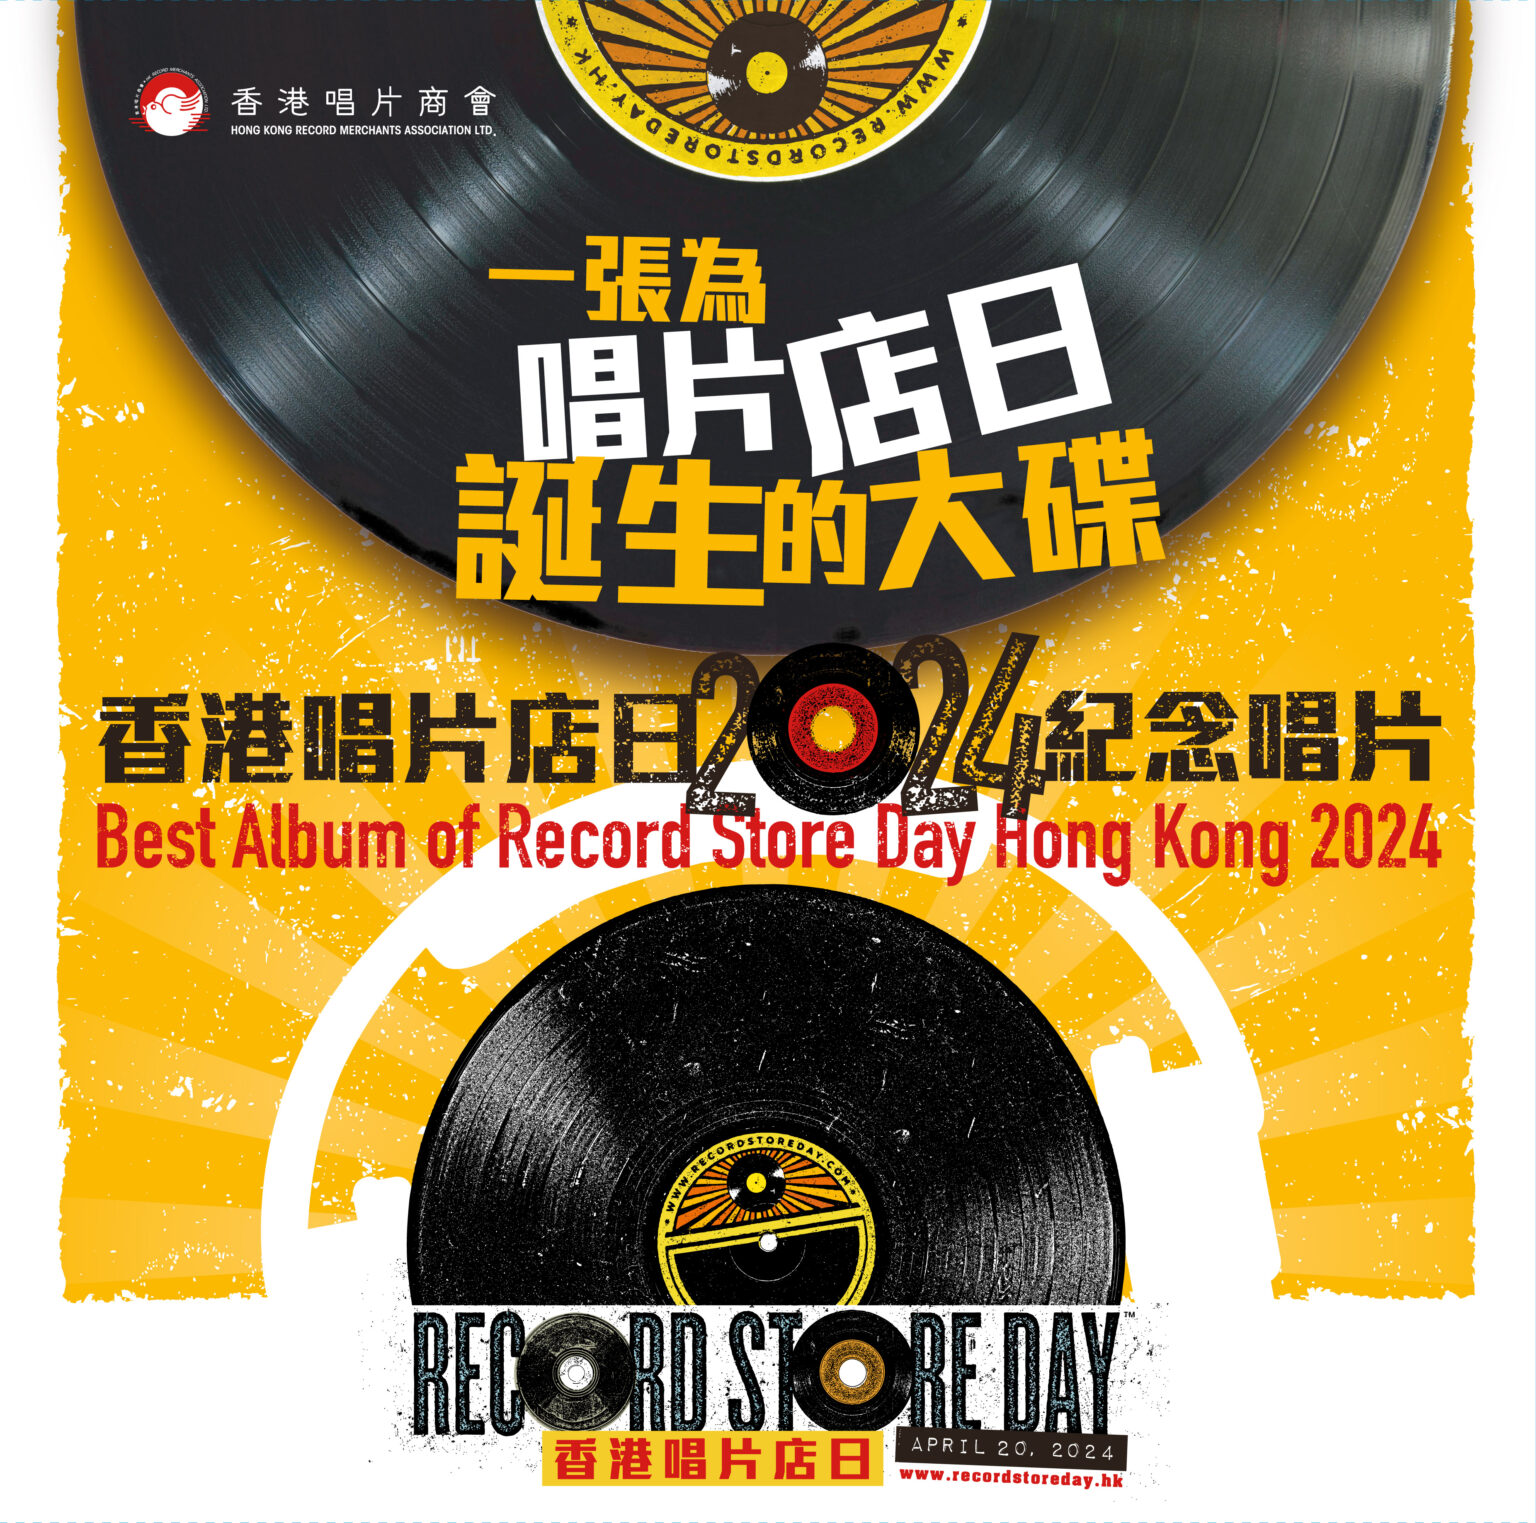 將指針撥回唱片年代-香港唱片店文化寶藏展覽及首個唱片店日舉行